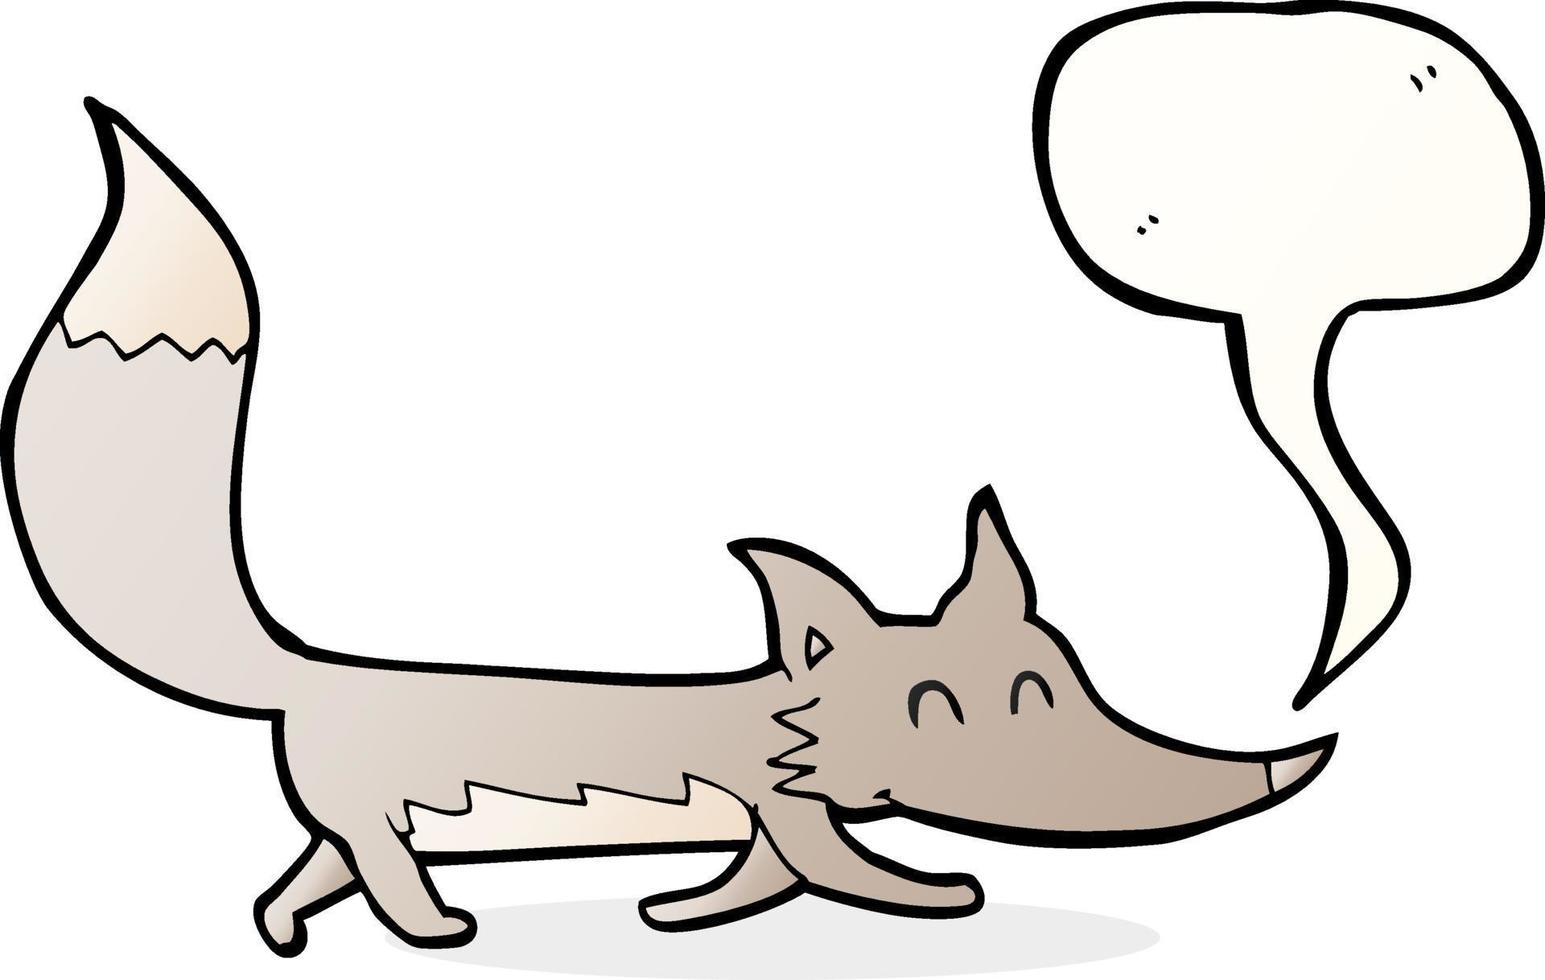 dessin animé petit loup avec bulle de dialogue vecteur